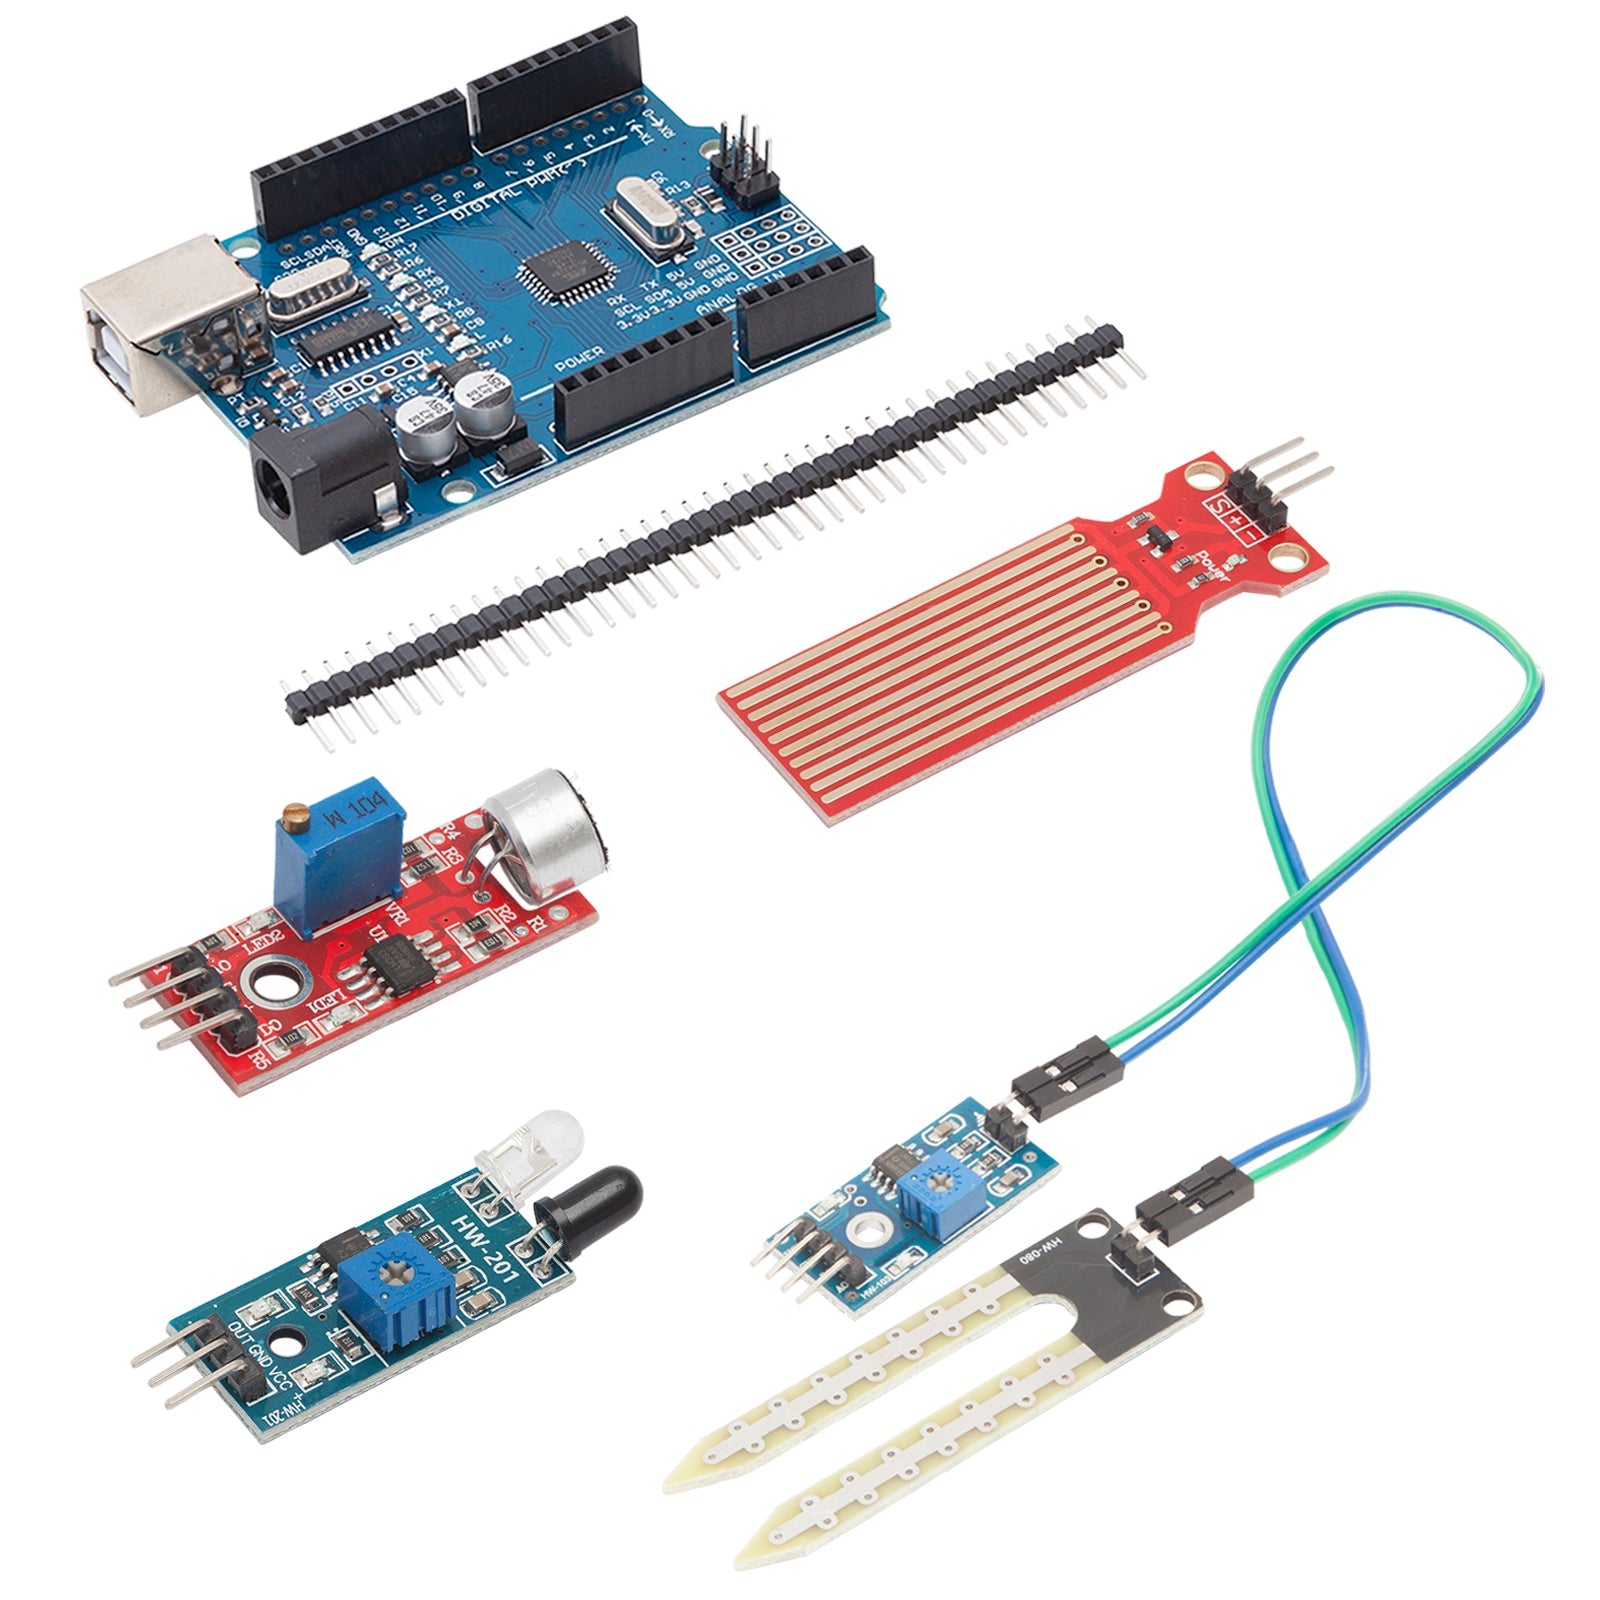 Elektronik Basic Starter Kit mit MCU, Breadboard, Sensor-Modulen und Wiederstand Set kompatibel mit Arduino - AZ-Delivery